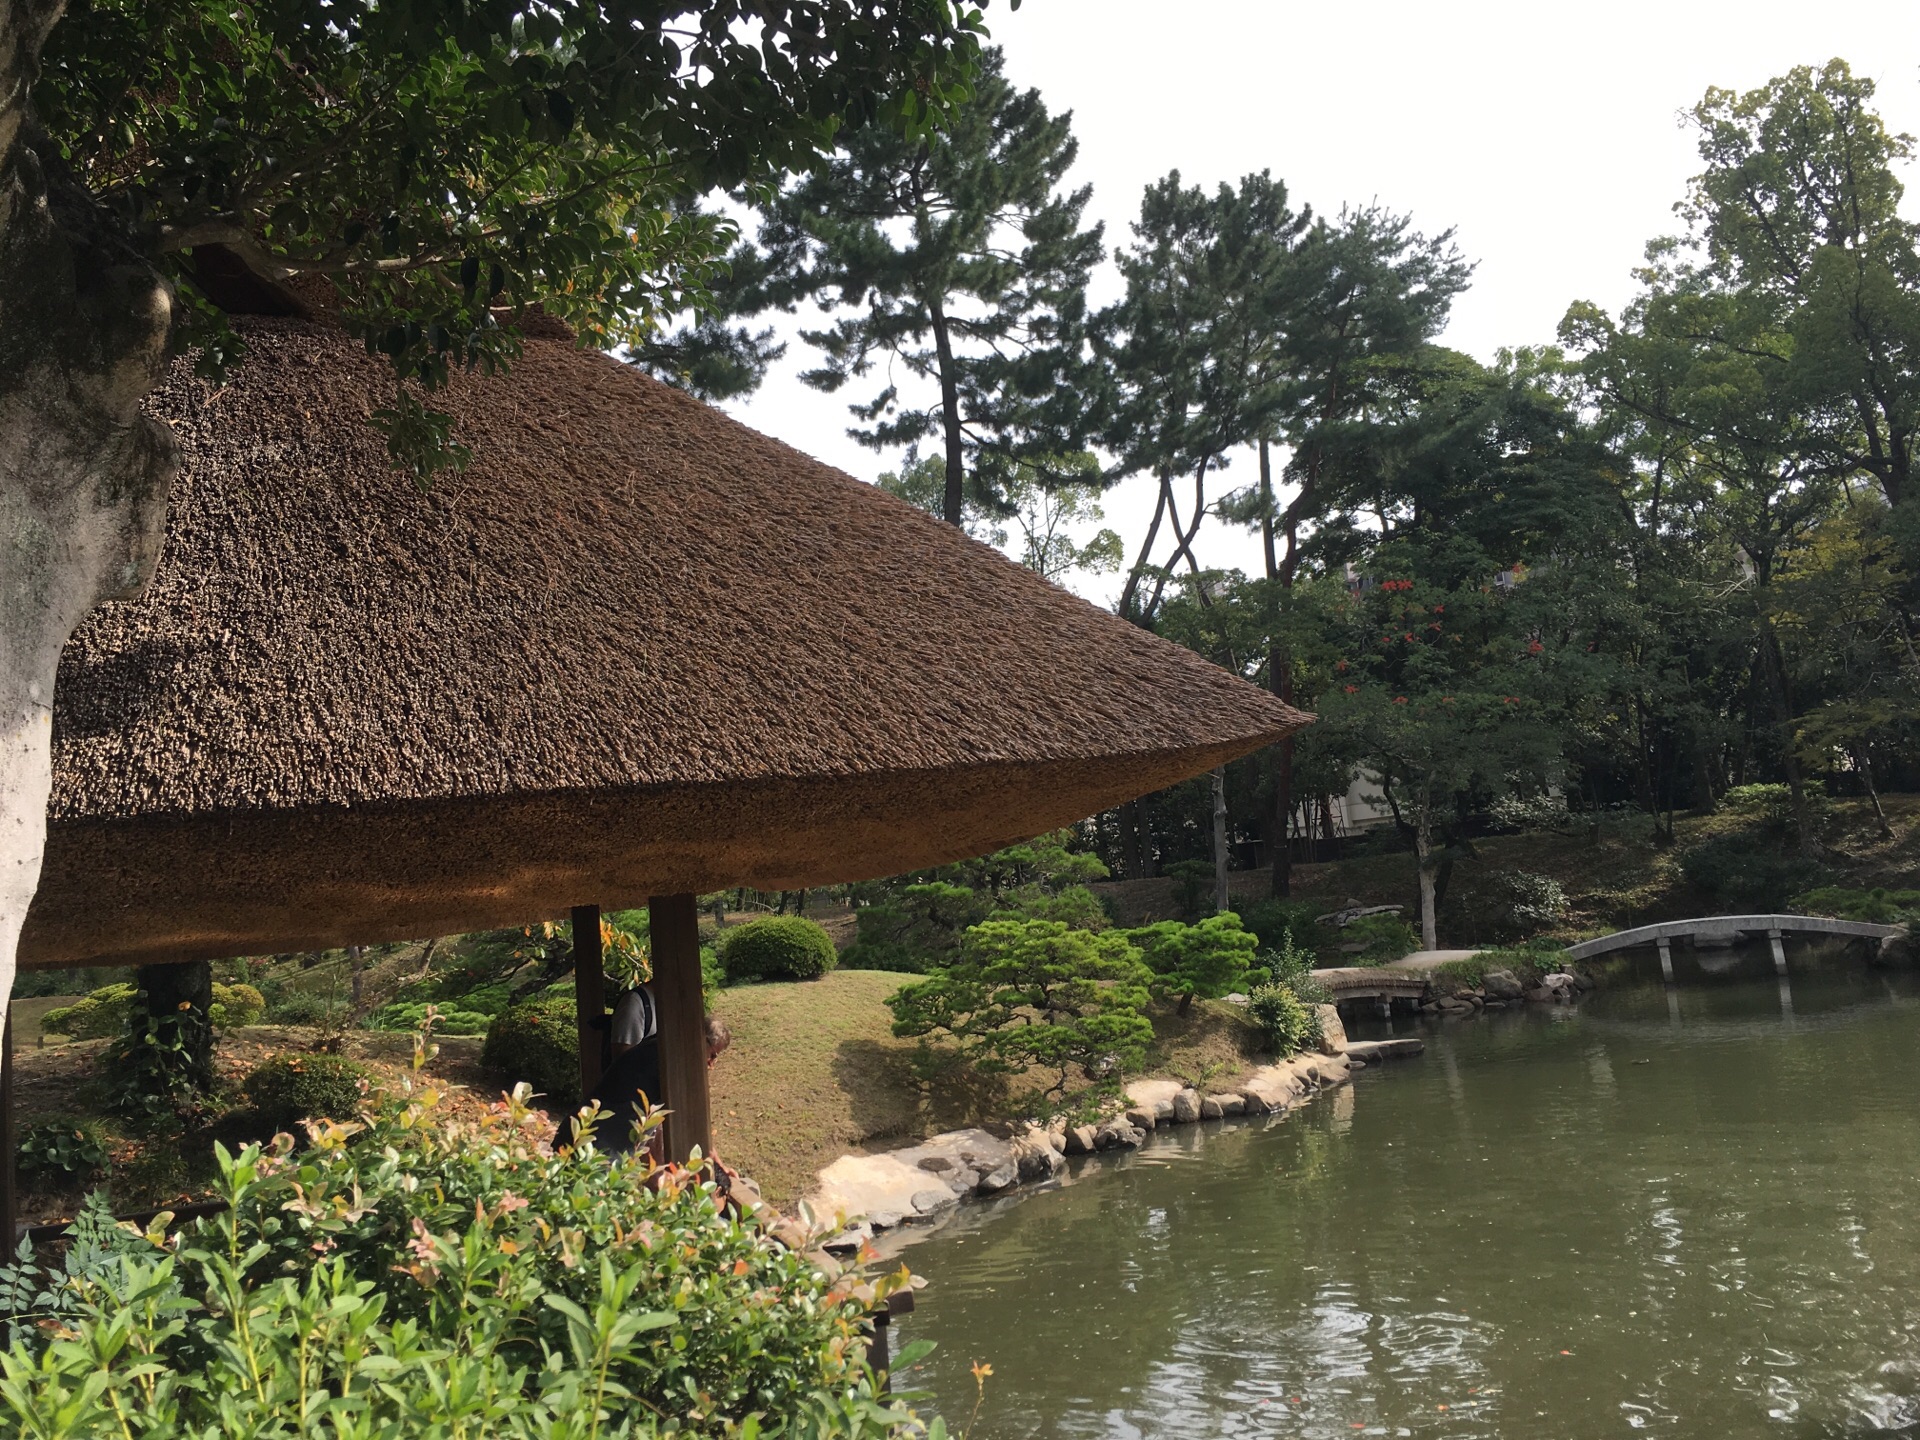 【携程攻略】广岛缩景园景点,非常精致,安静的一个景点,类似一个小